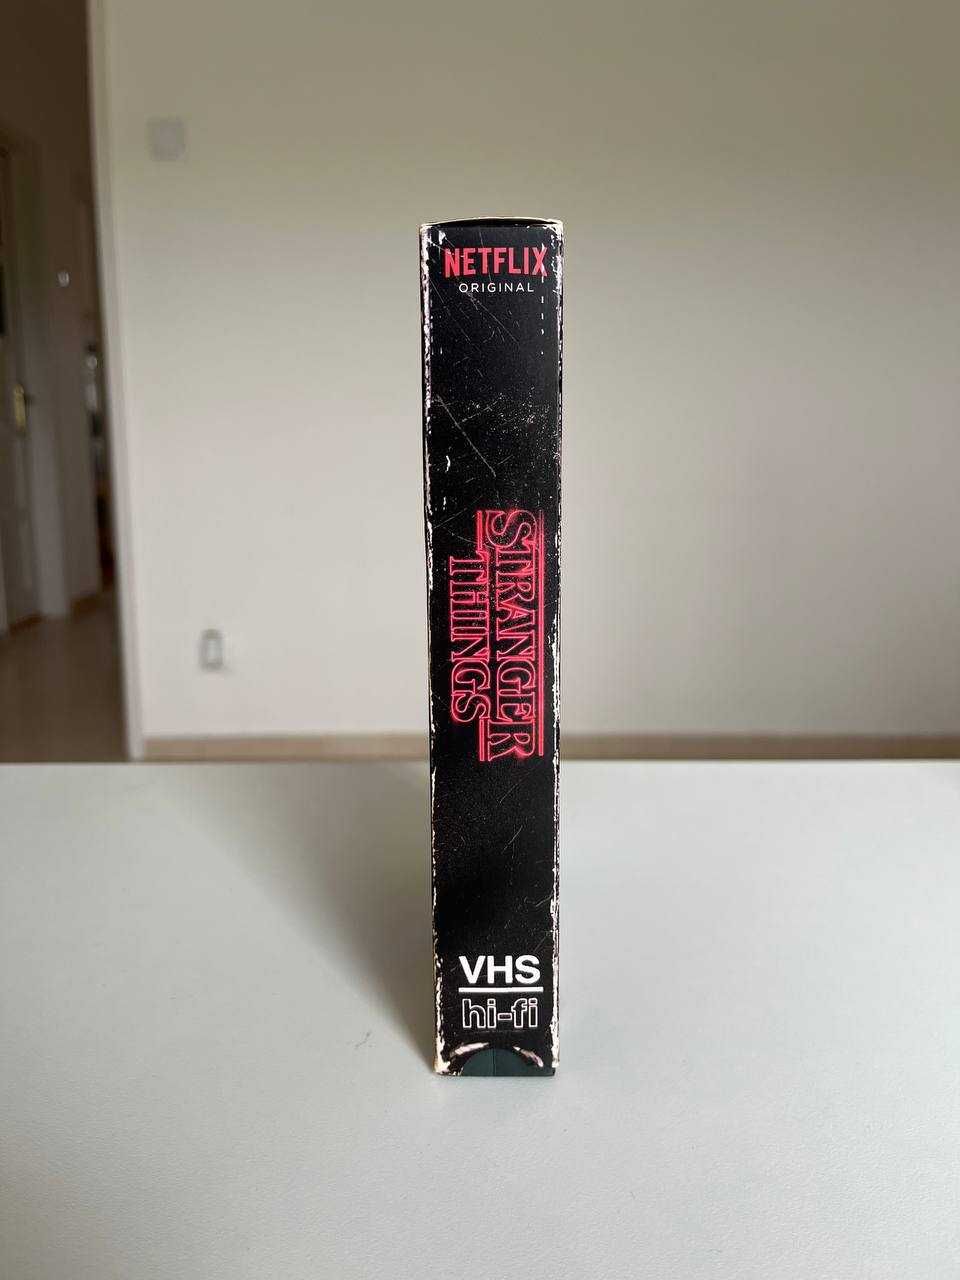 DVD / VHS temporada 1 de Stranger Things 4 discos + poster Netflix